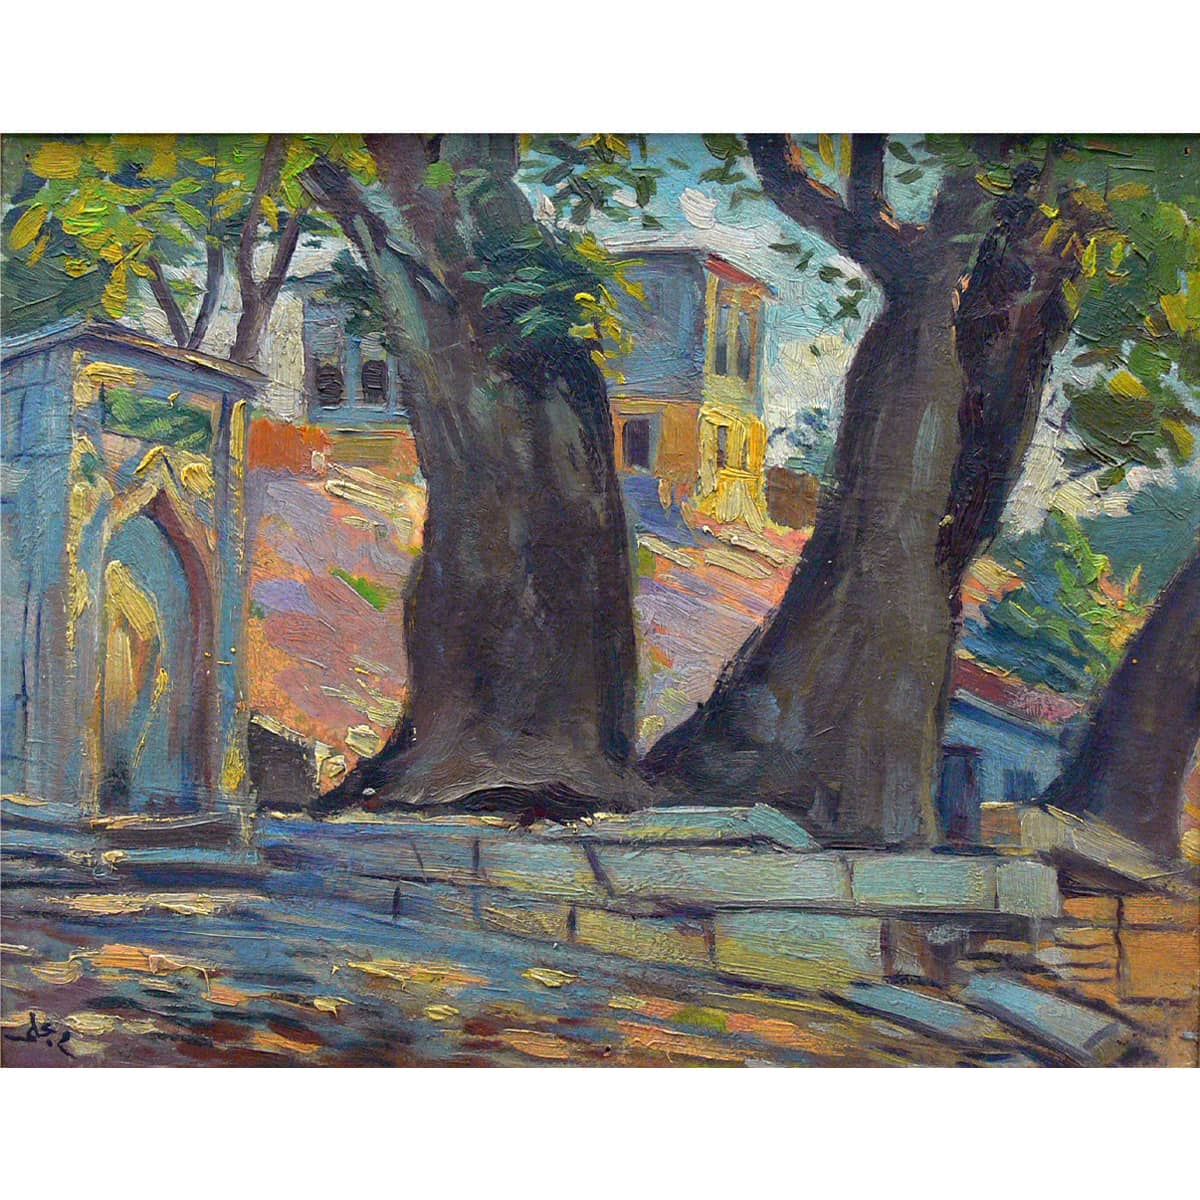 MEHMET ALİ LAGA, Ağaçlar ve Çeşme, 1924